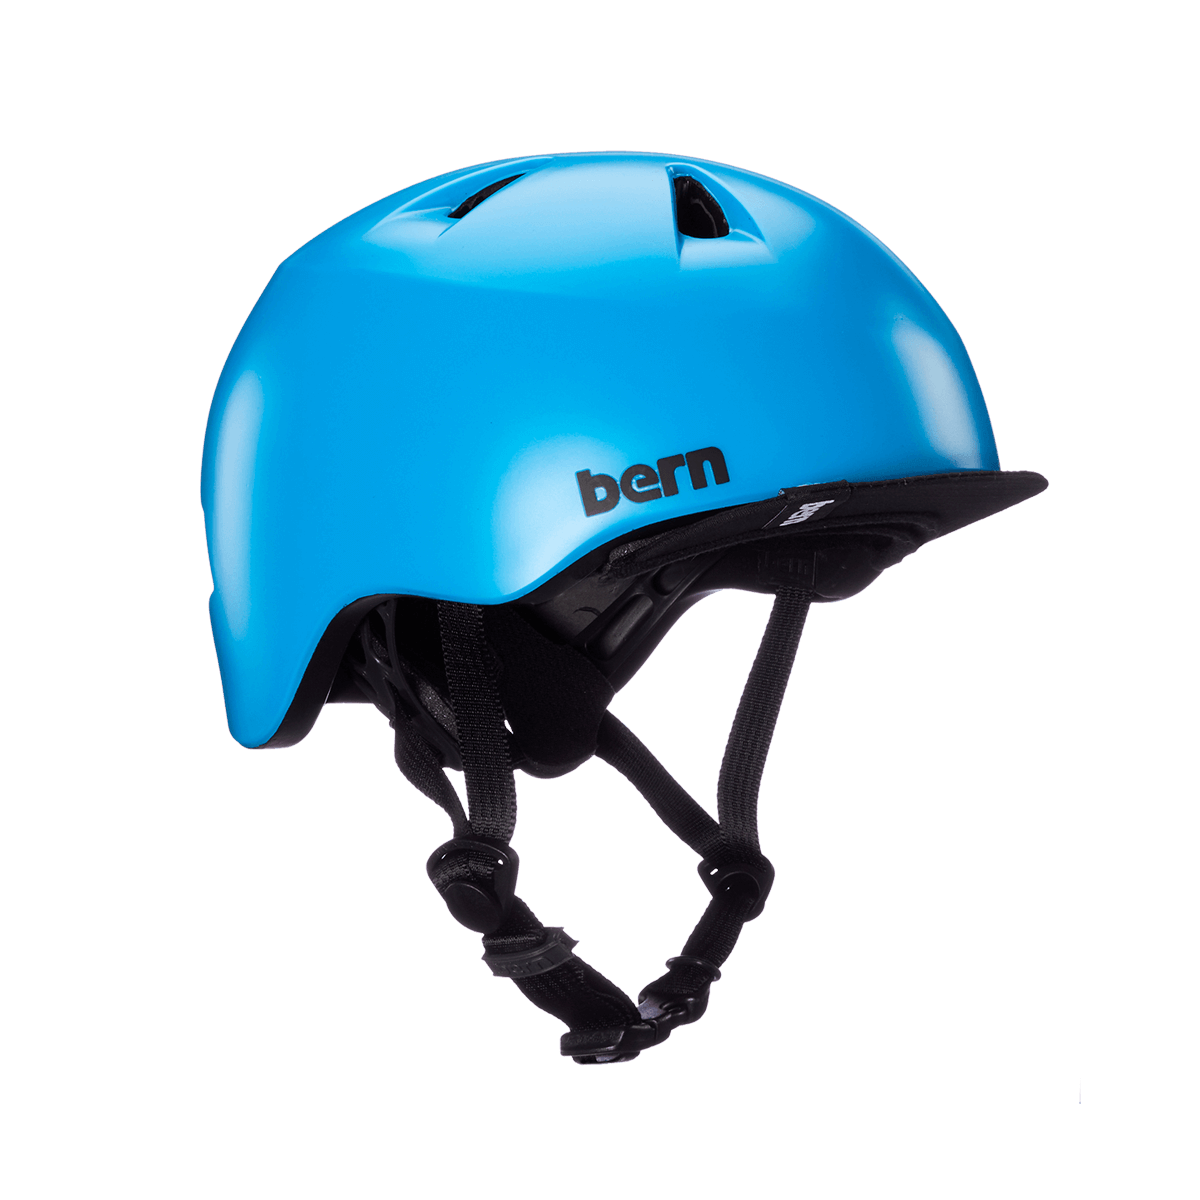 Bern Tigre Kids Bike Helmet - Satin Cyan Blue